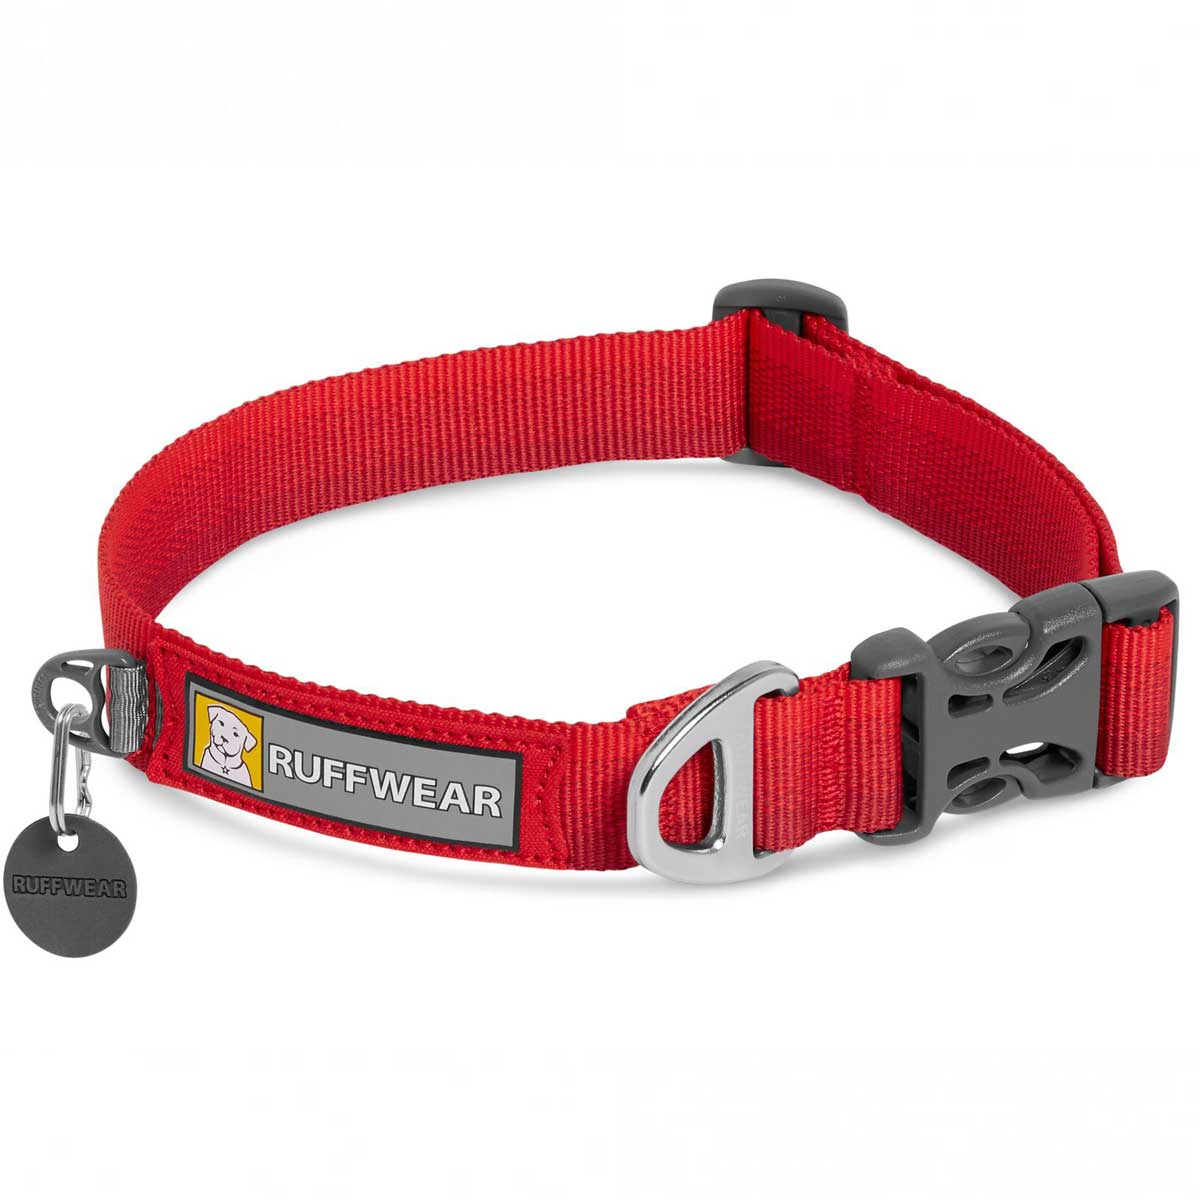 RUFFWEAR Front Range Dog Collar - Red Sumac